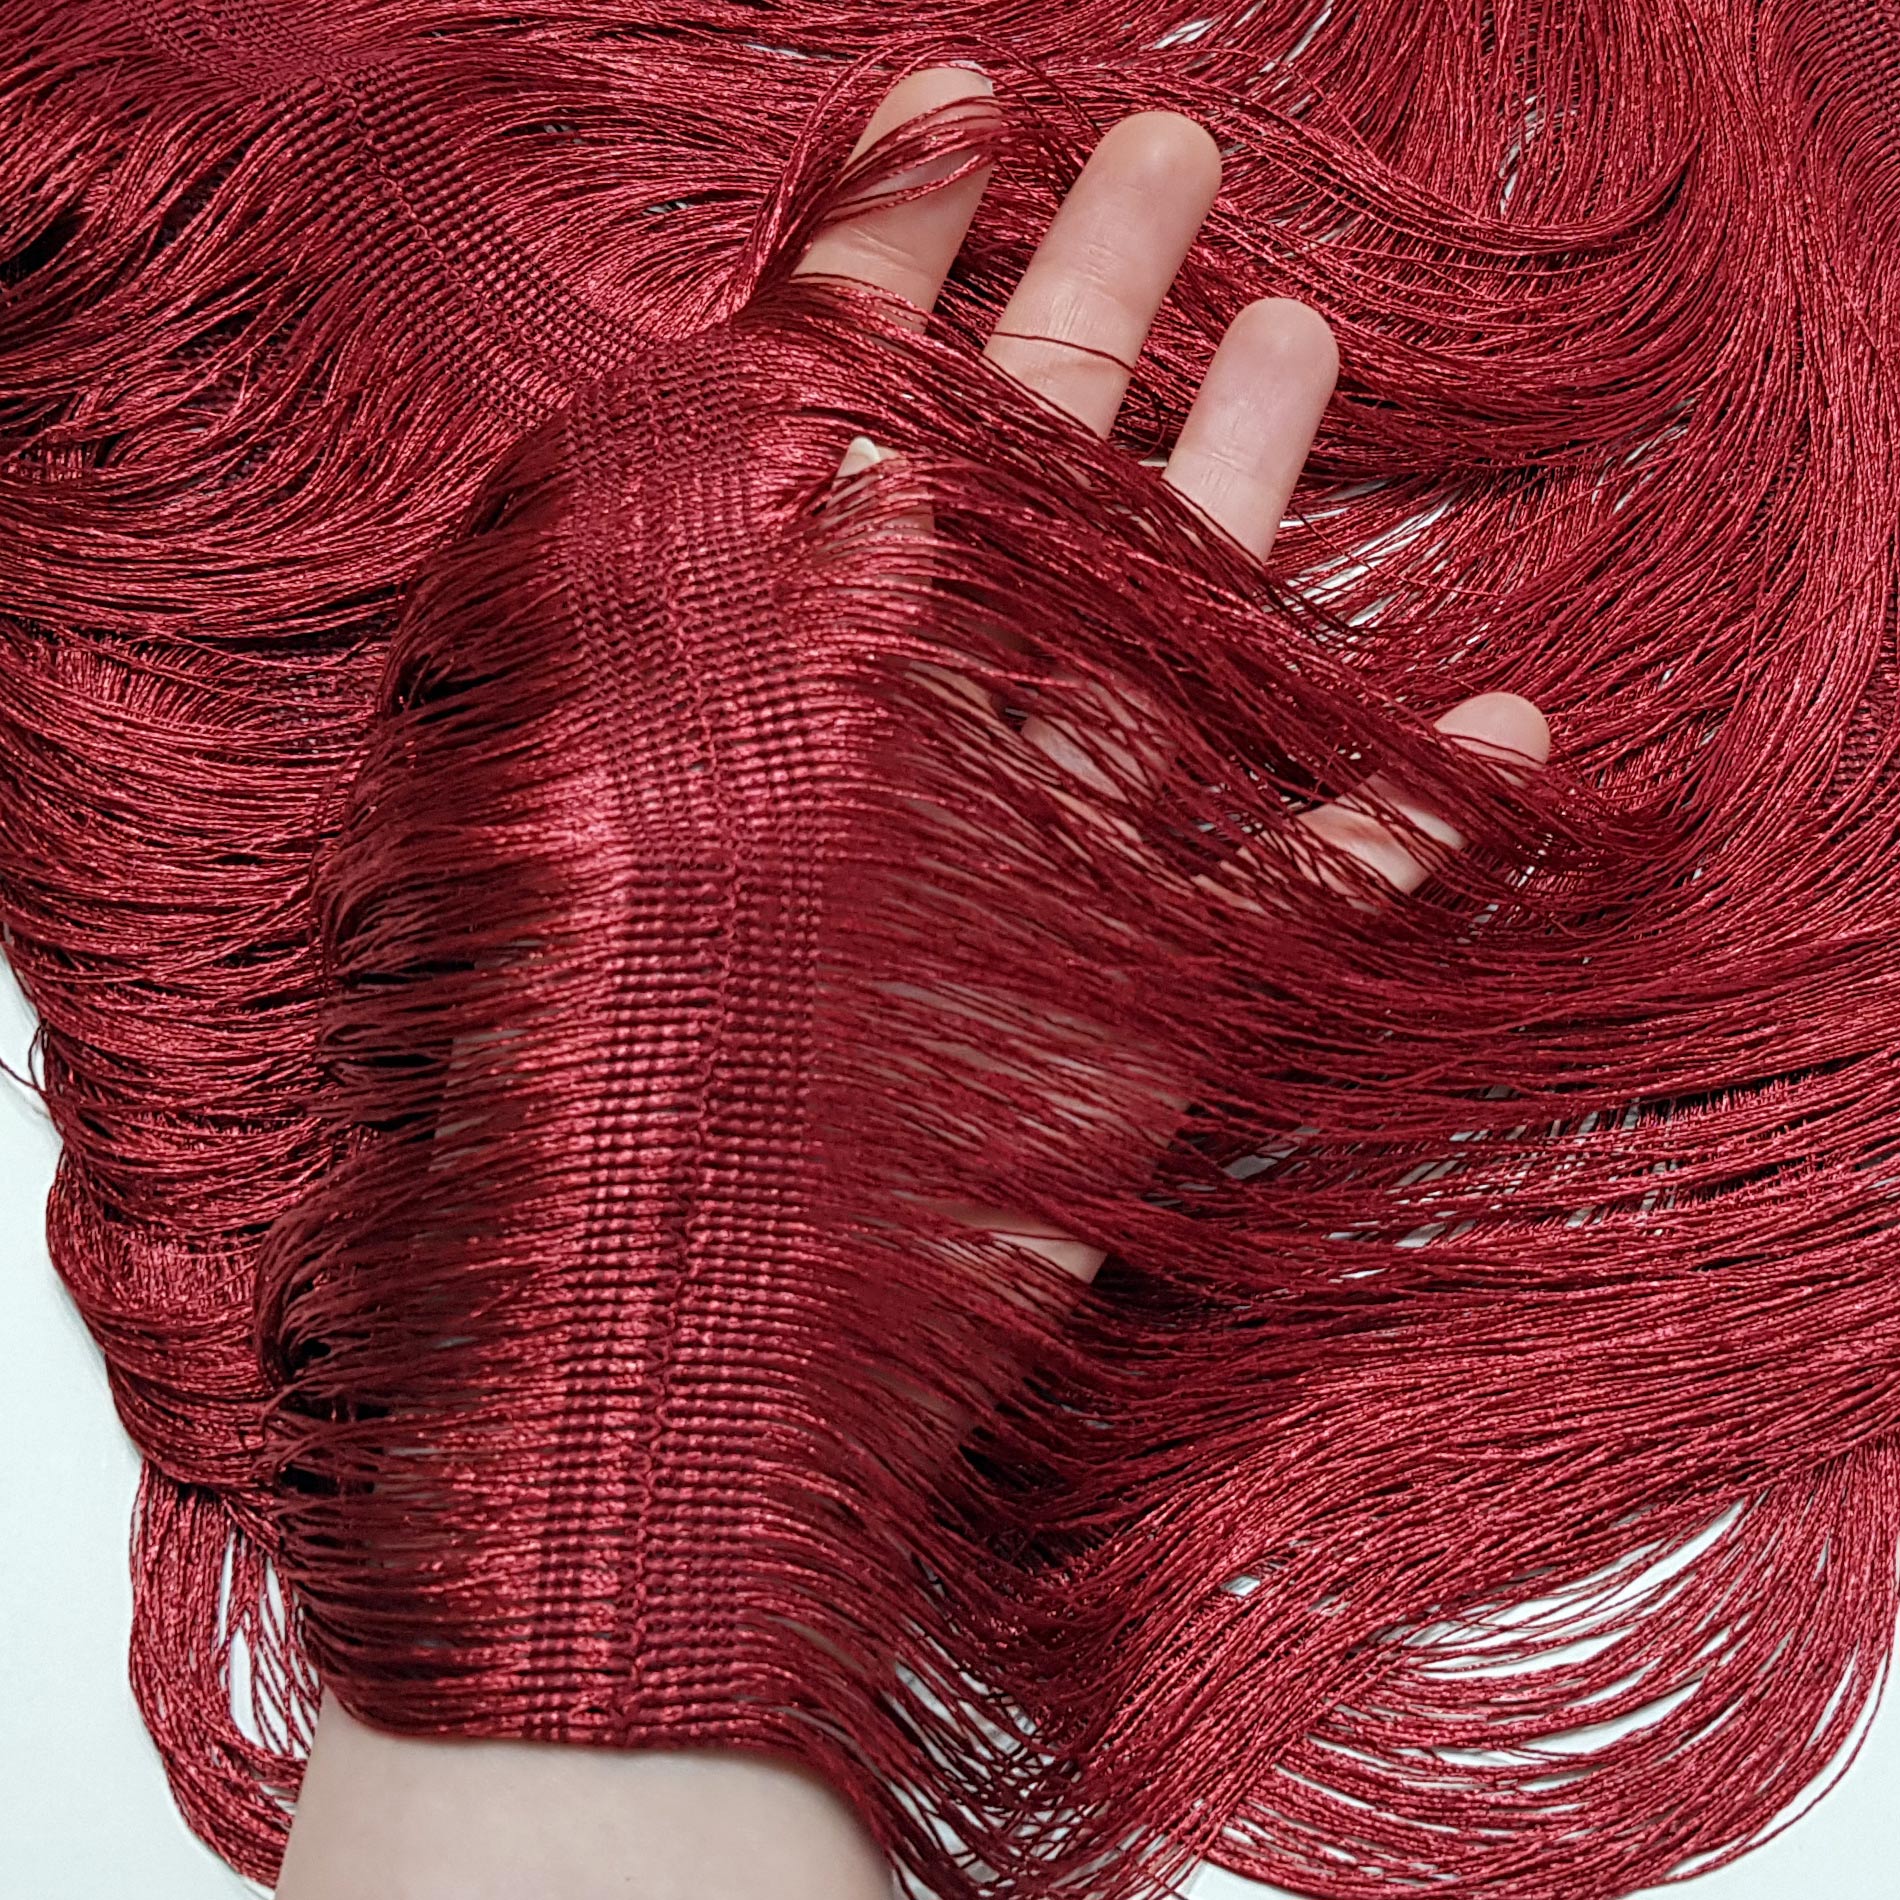 لباس خواب زنانه ماییلدا مدل ریش ریش کد 4709-3002 رنگ زرشکی -  - 5